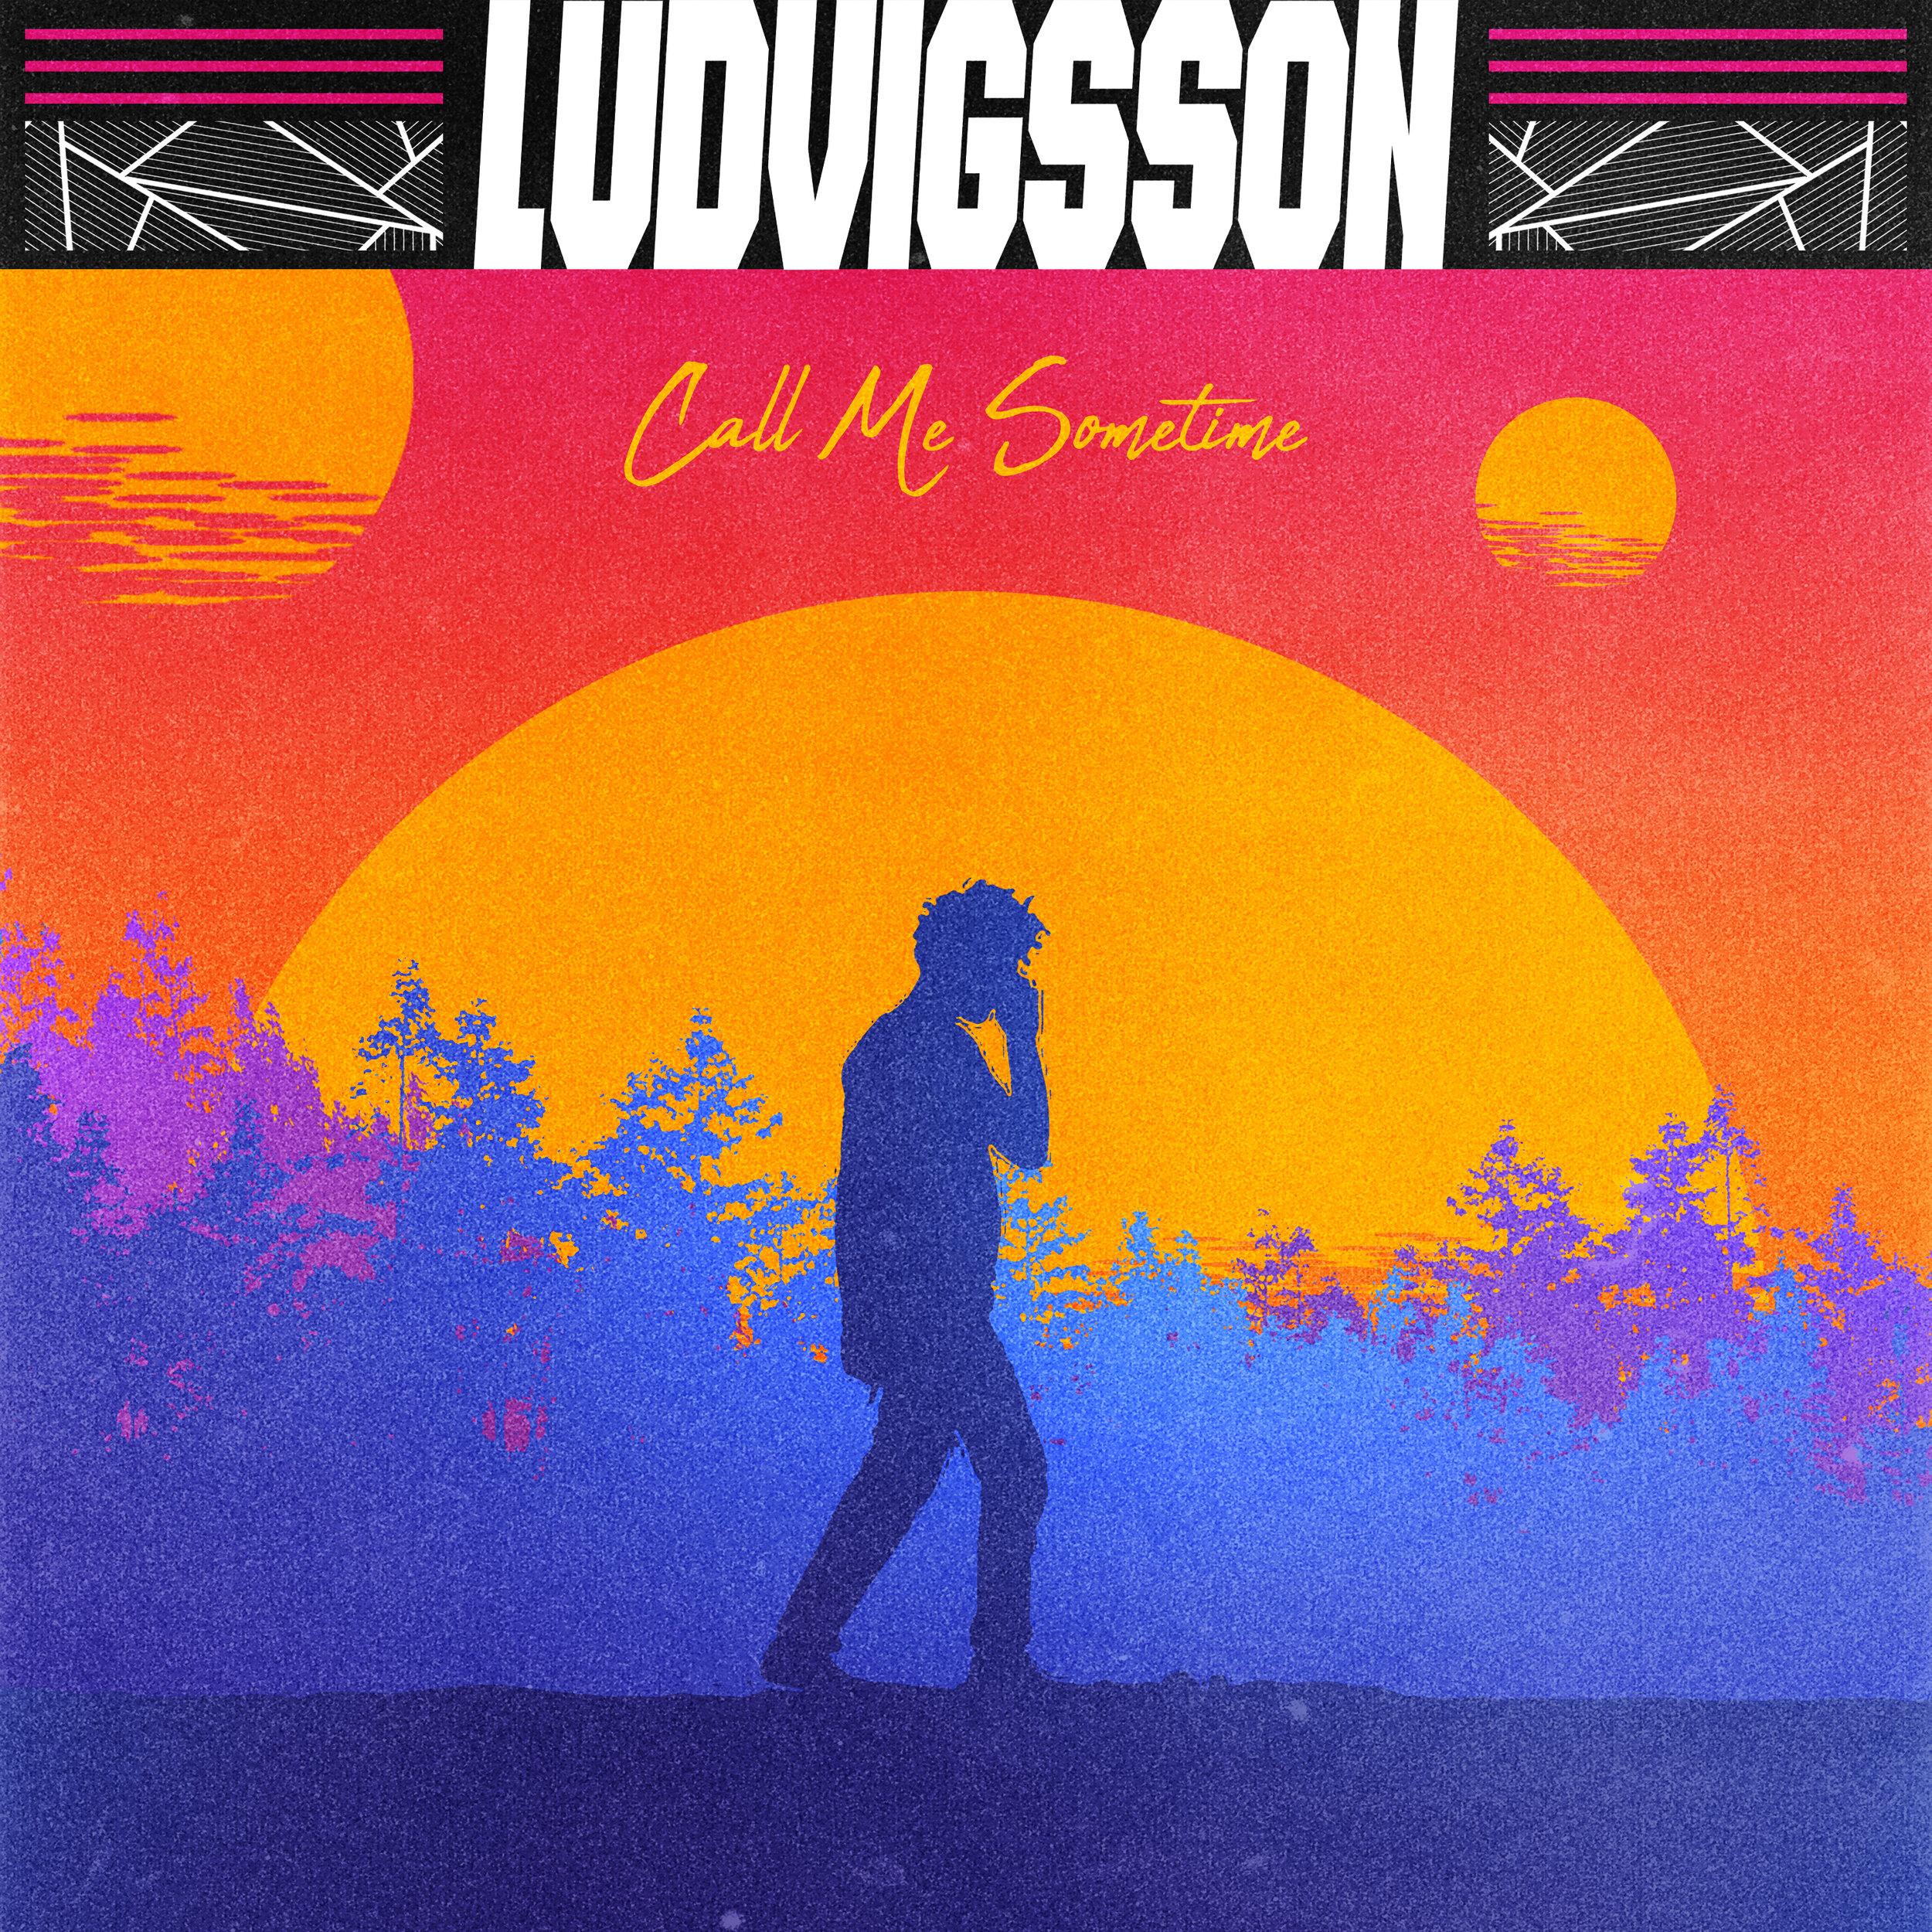 ludvigsson_callmesometime_cover.jpg